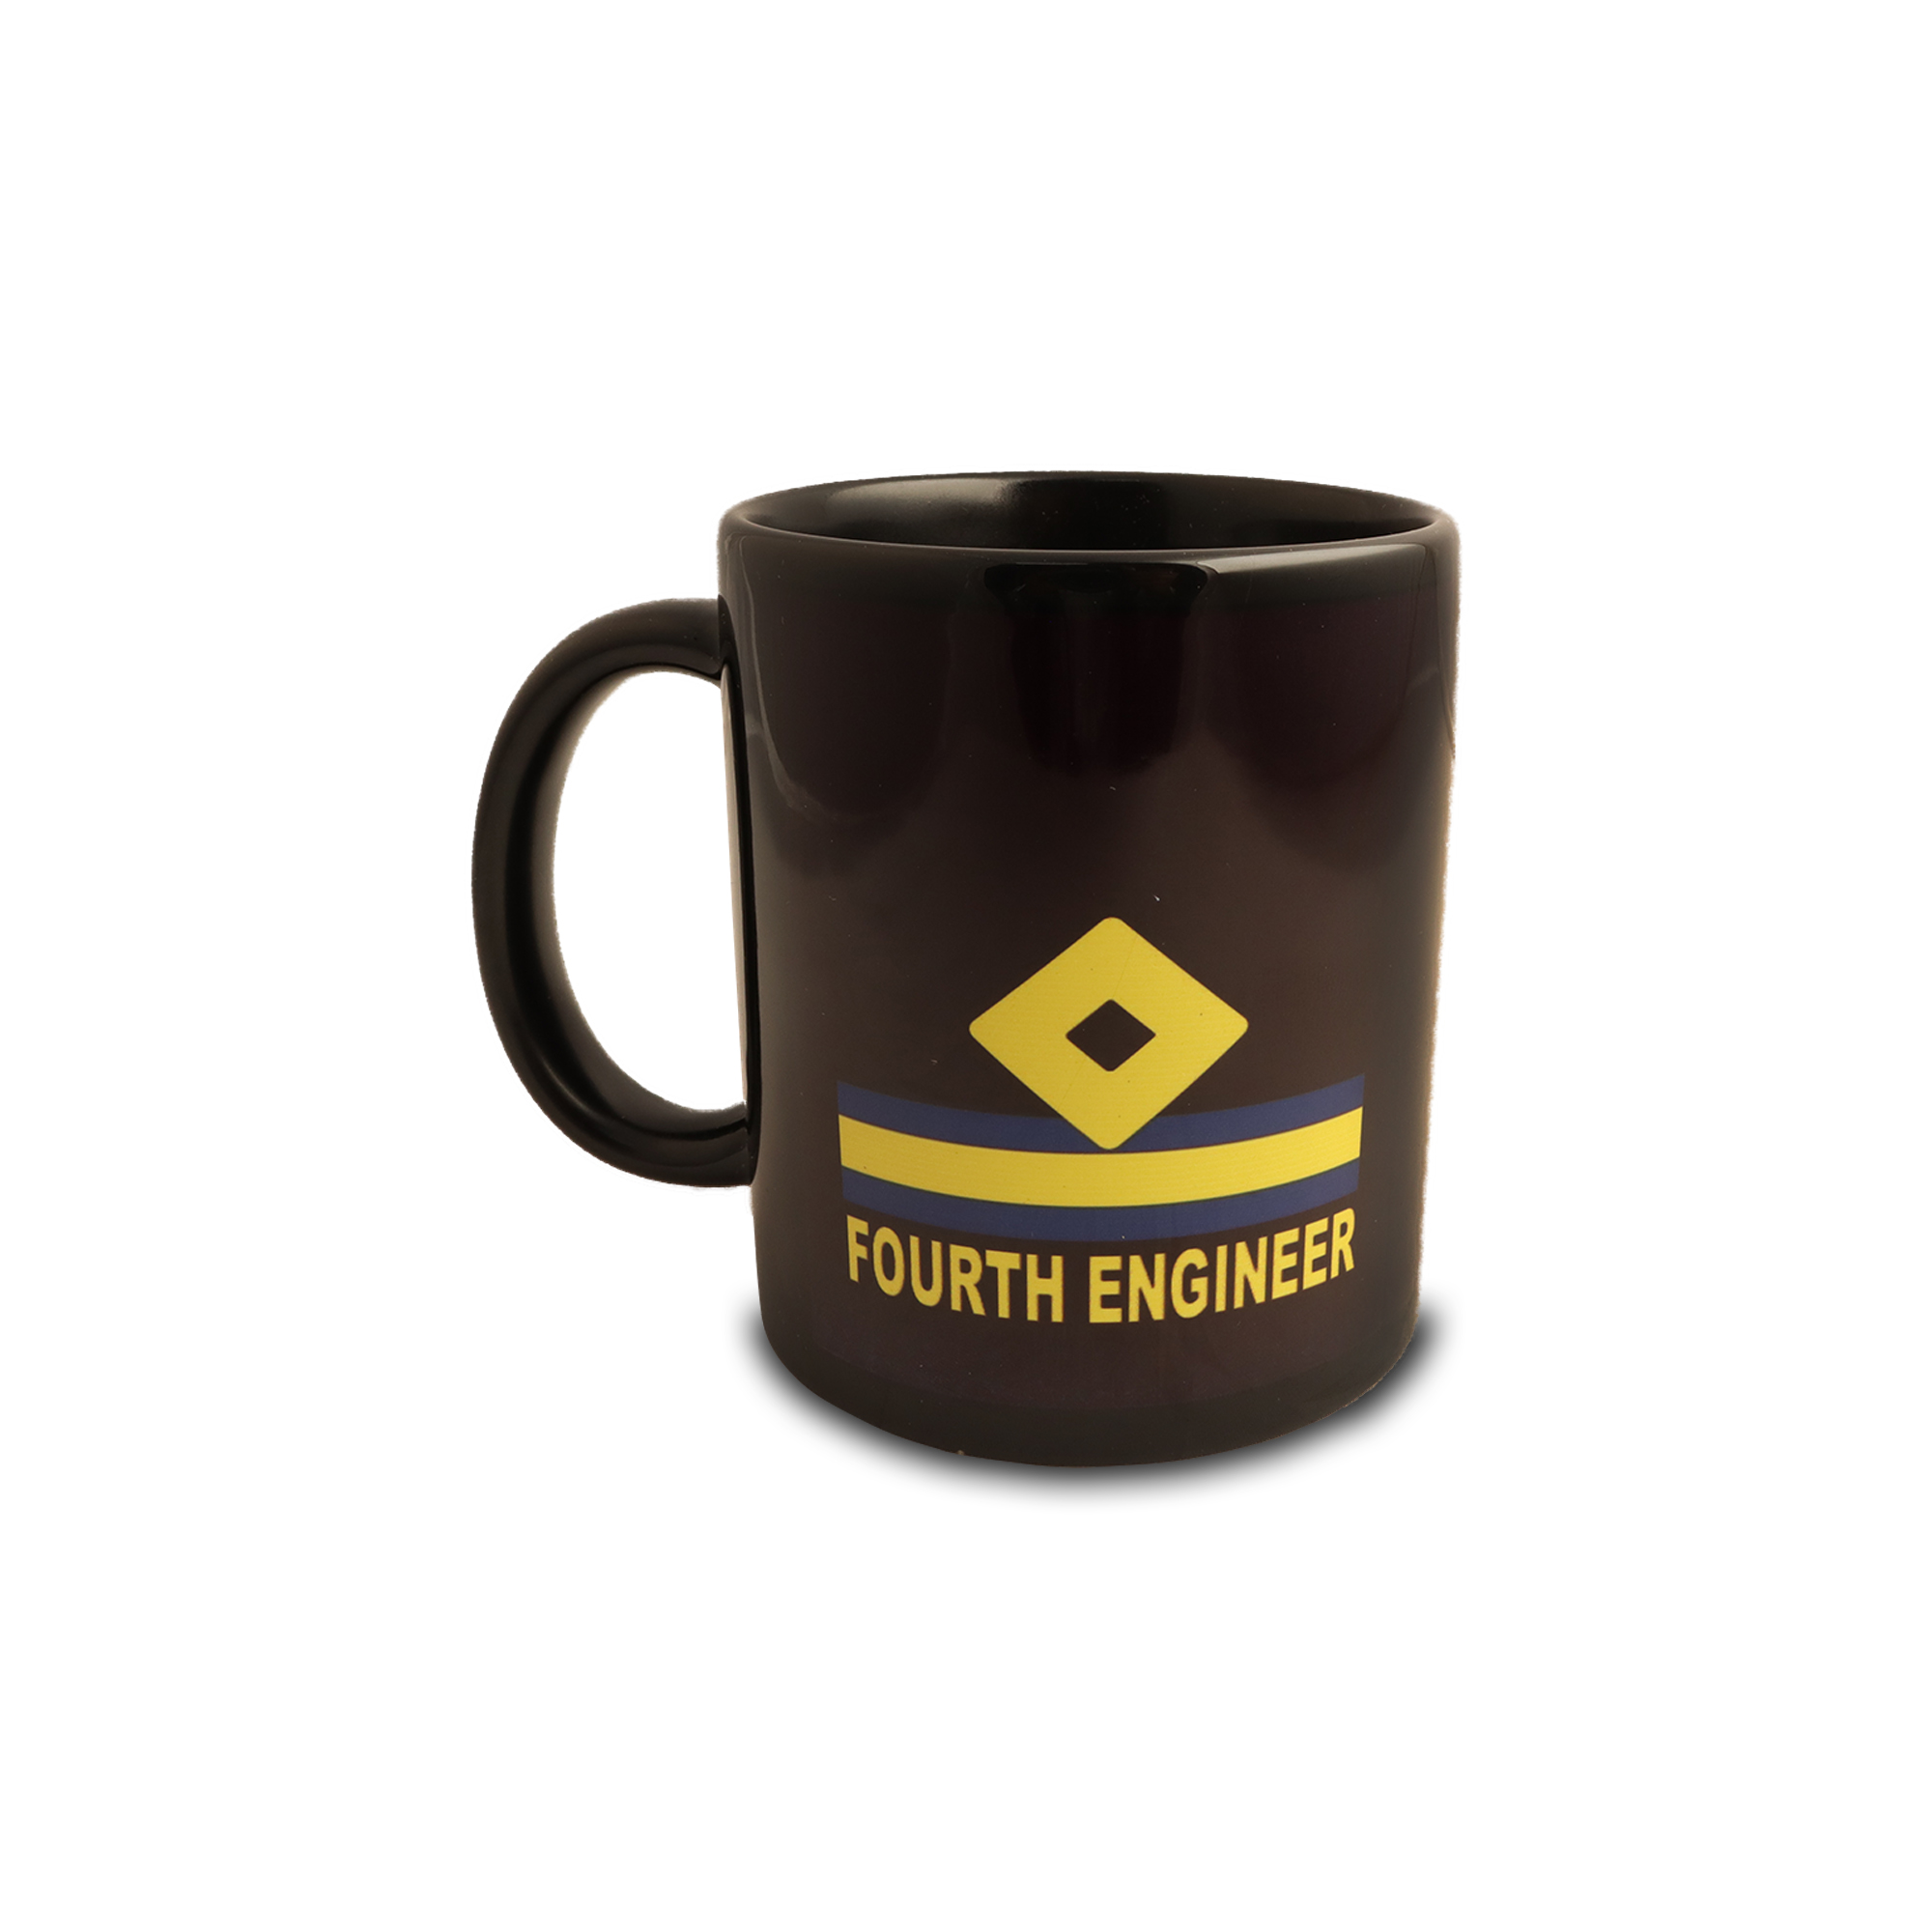 Fourth Engineer Coffee Mug / Cup